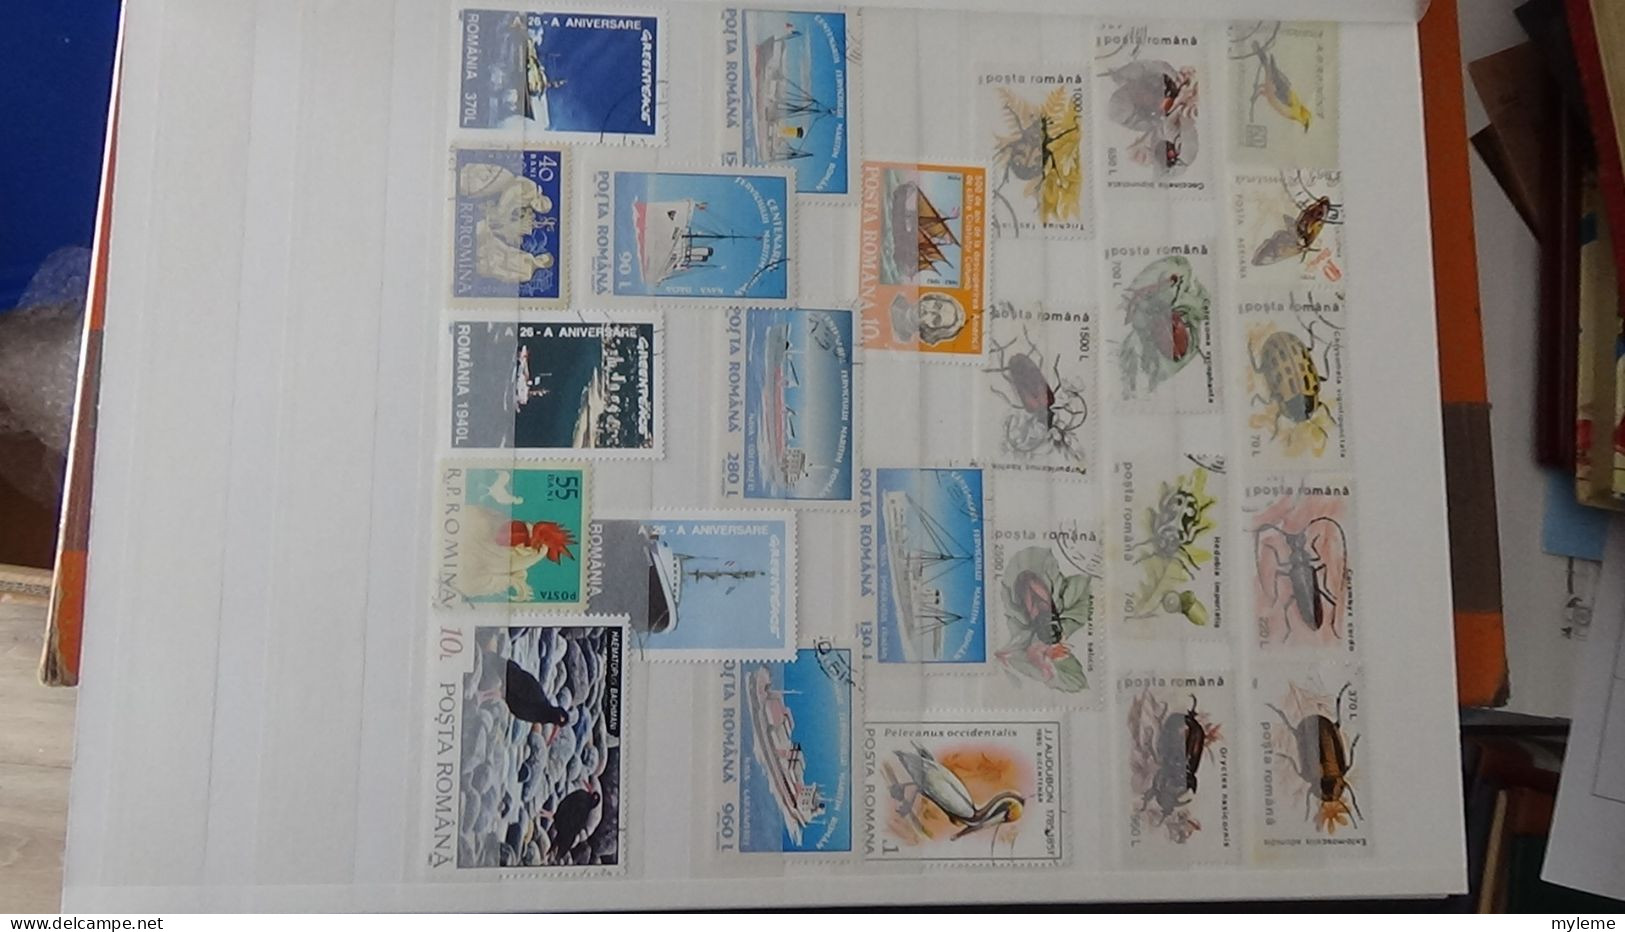 BF18 Ensemble de timbres et blocs oblitérés de divers pays + classiques de France ** avec petits défauts. Cote sympa !!!